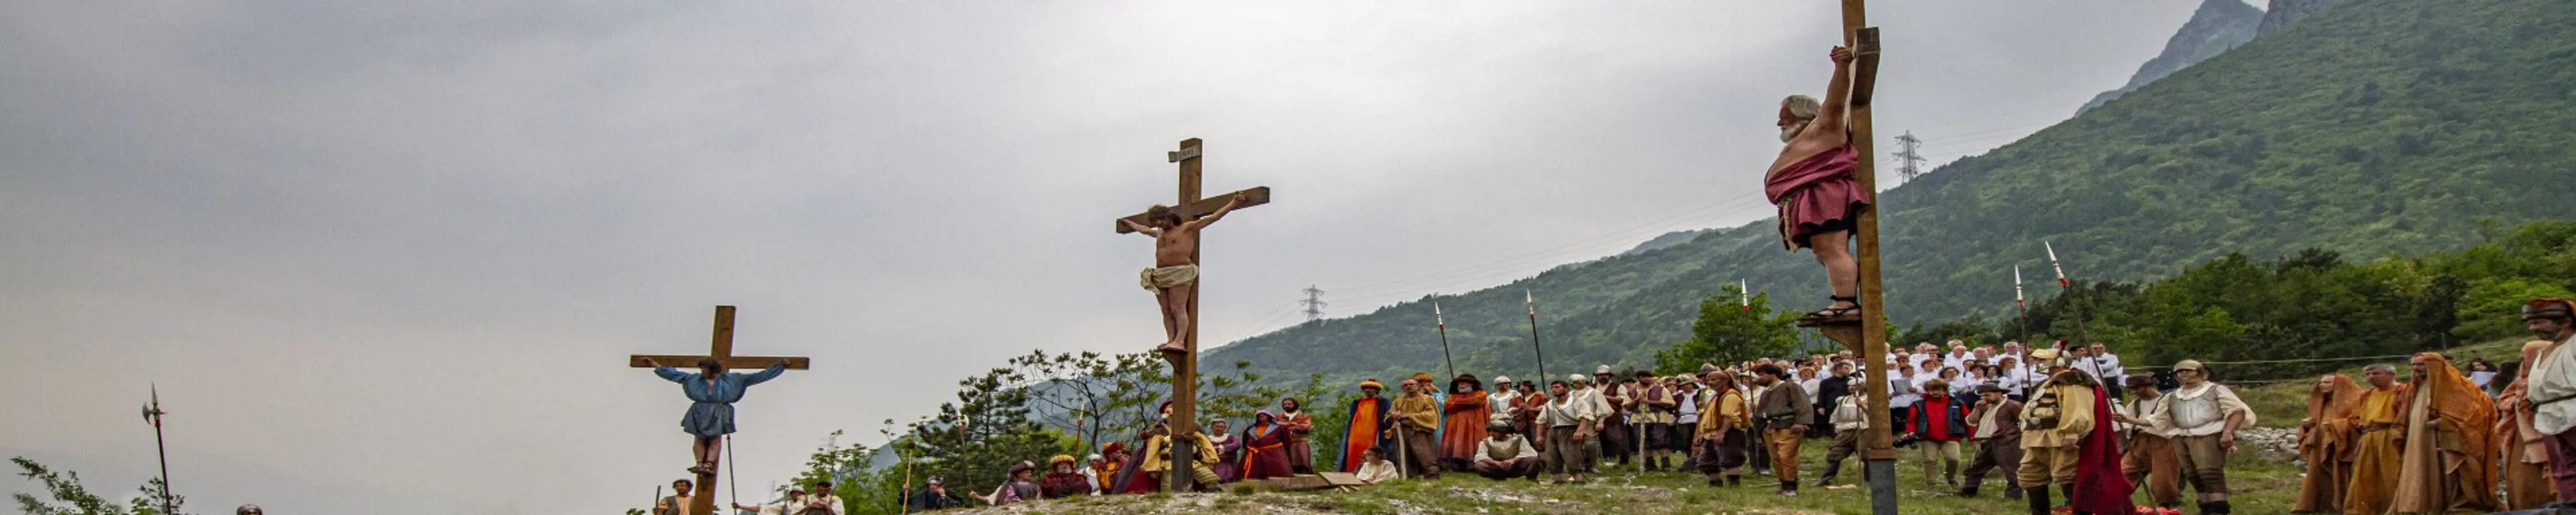 Crocifissione Santa Crus anno 2012